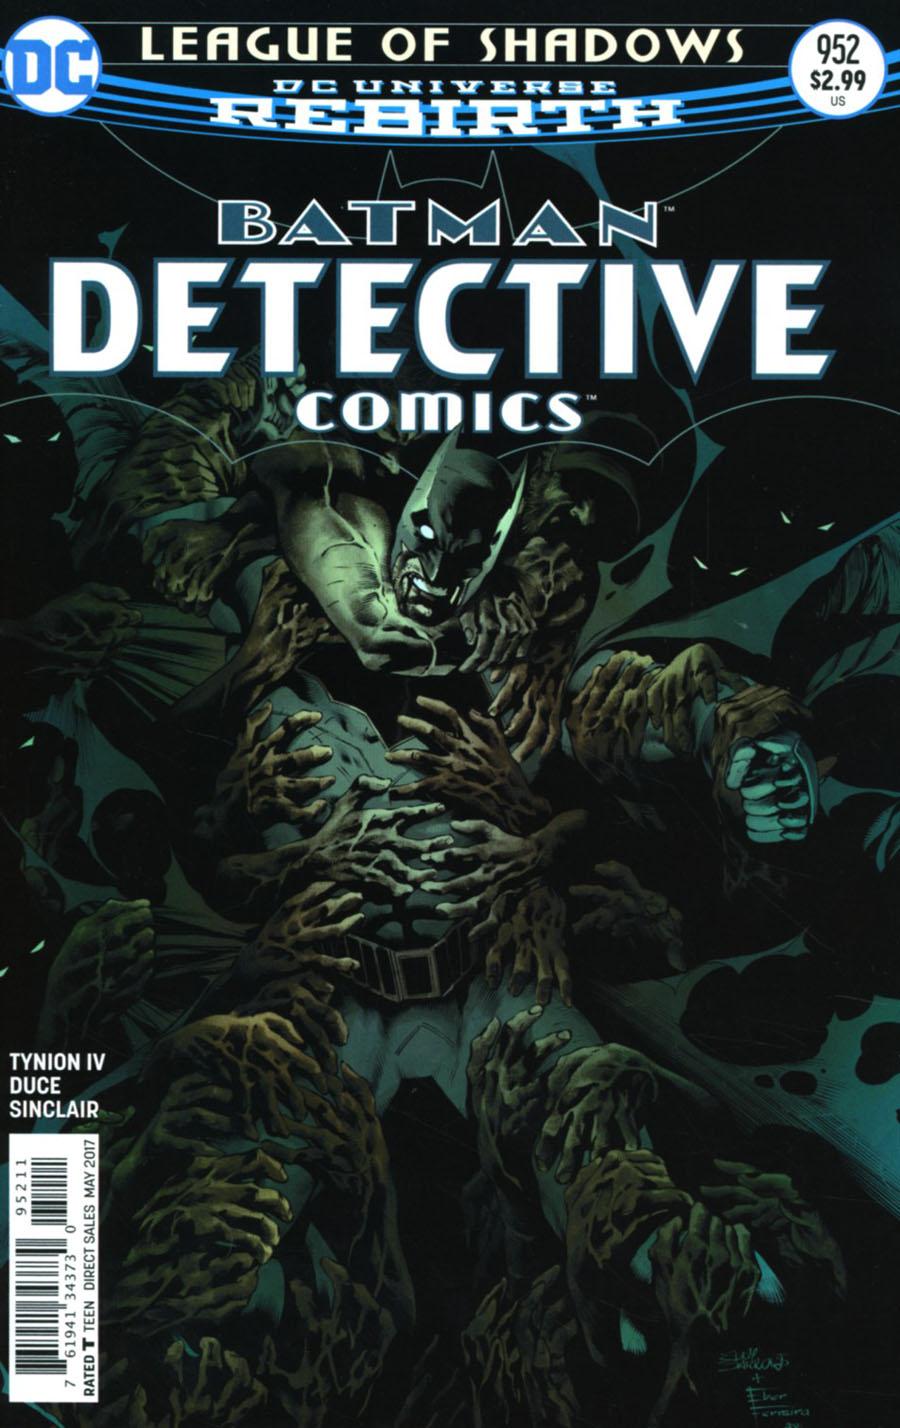 Detective Comics Vol. 2 #952